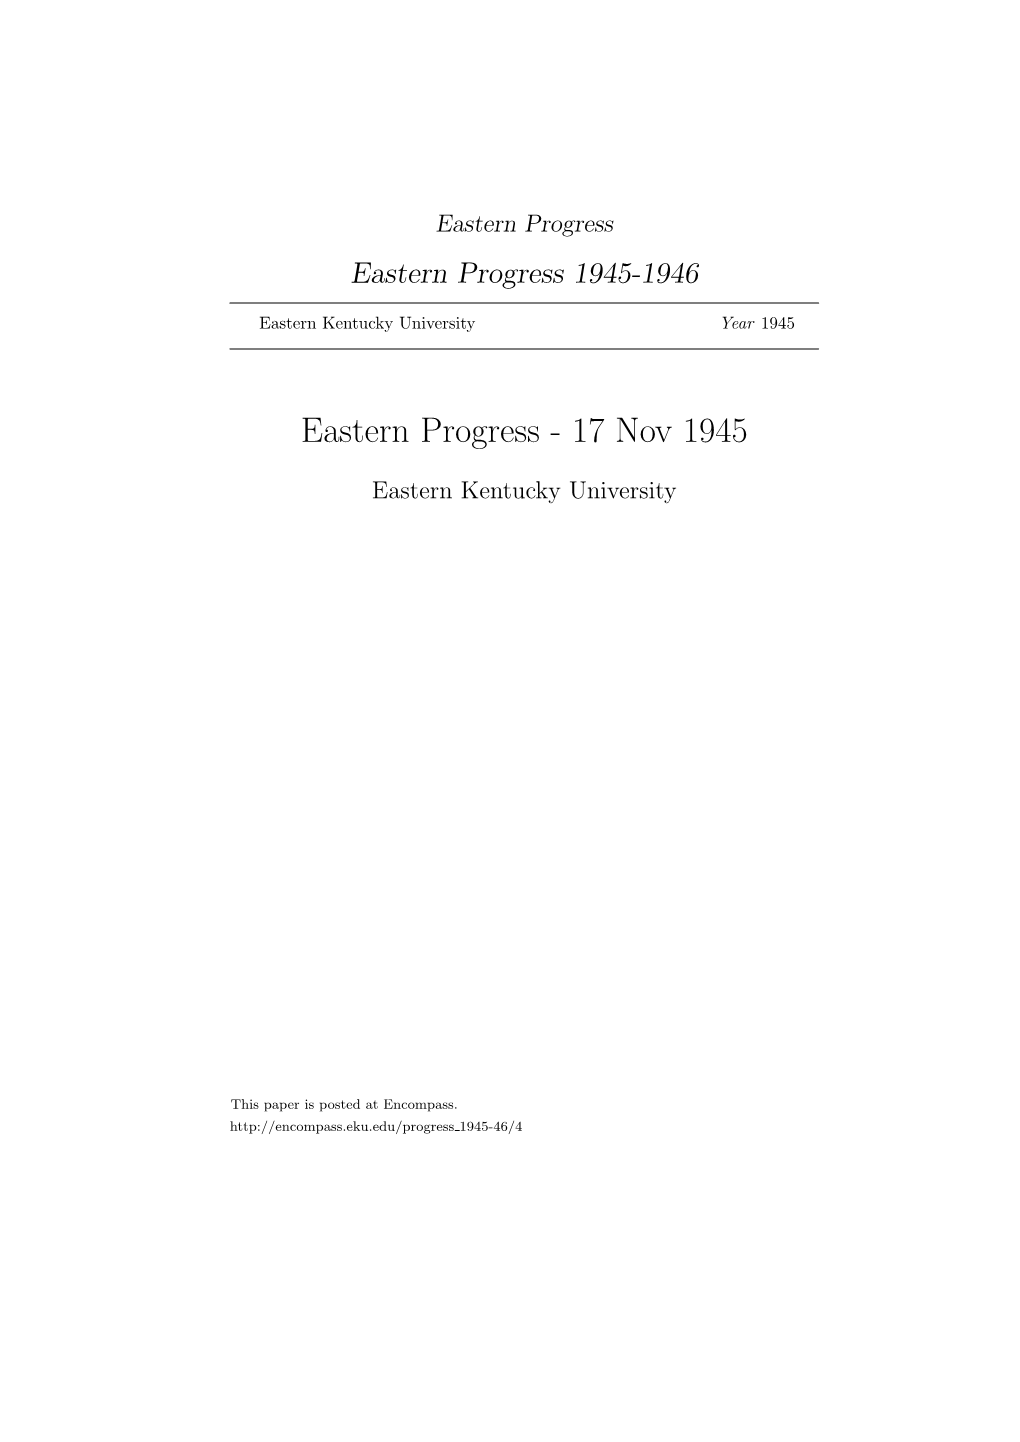 Eastern Progress Eastern Progress 1945-1946